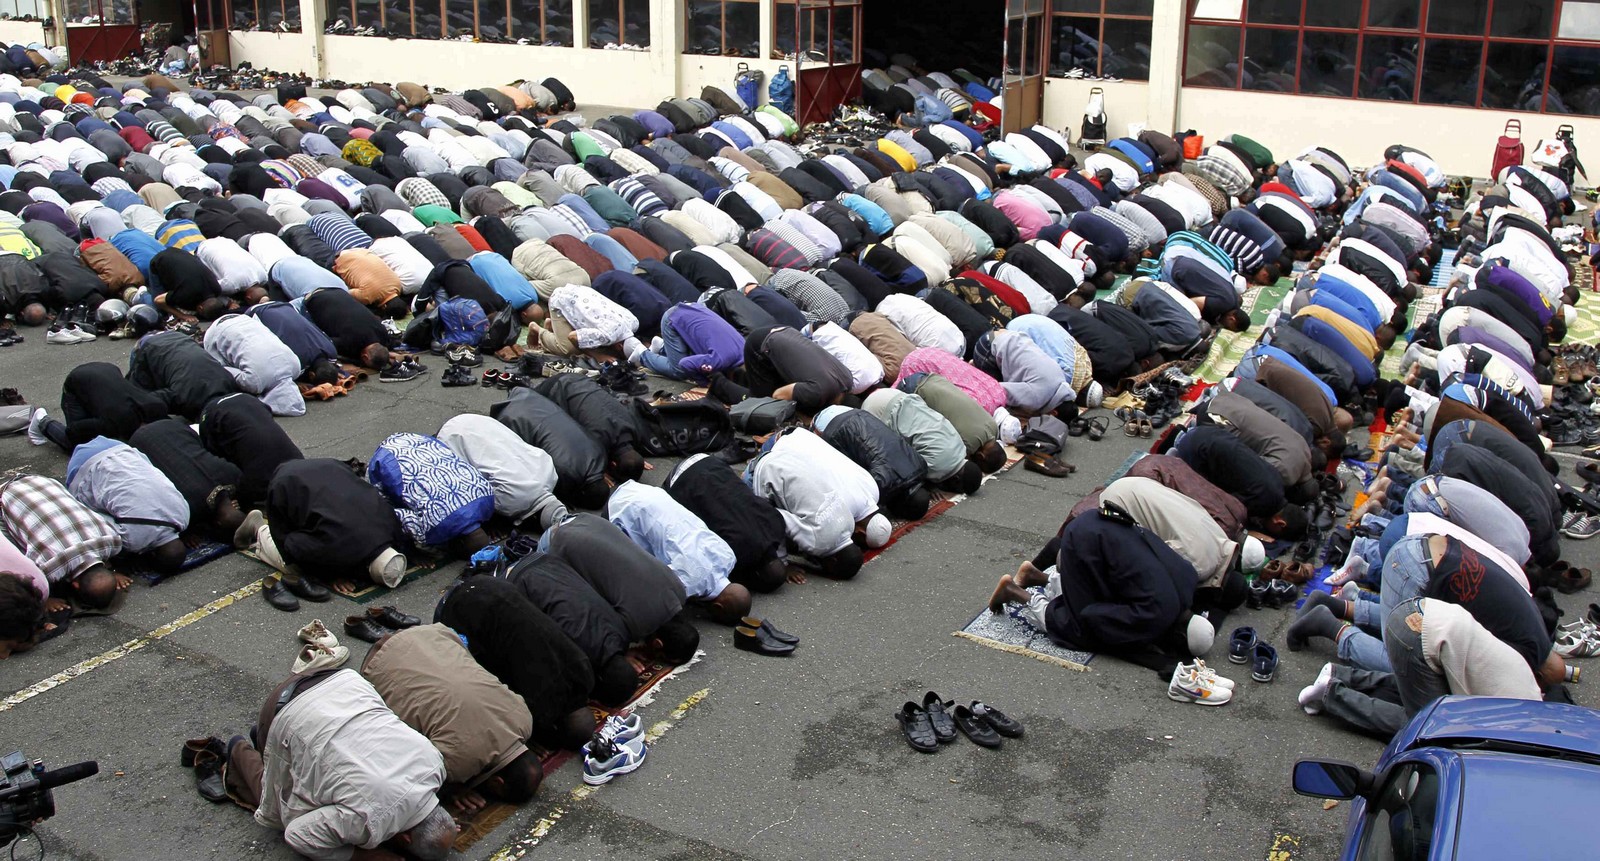 ¿Musulmanes Rezando en IGLESIAS CATÓLICAS? [¿qué Piensas sobre Permitirle a Musulmanes hacer sus Oraciones Dentro de Iglesias Católicas?]…